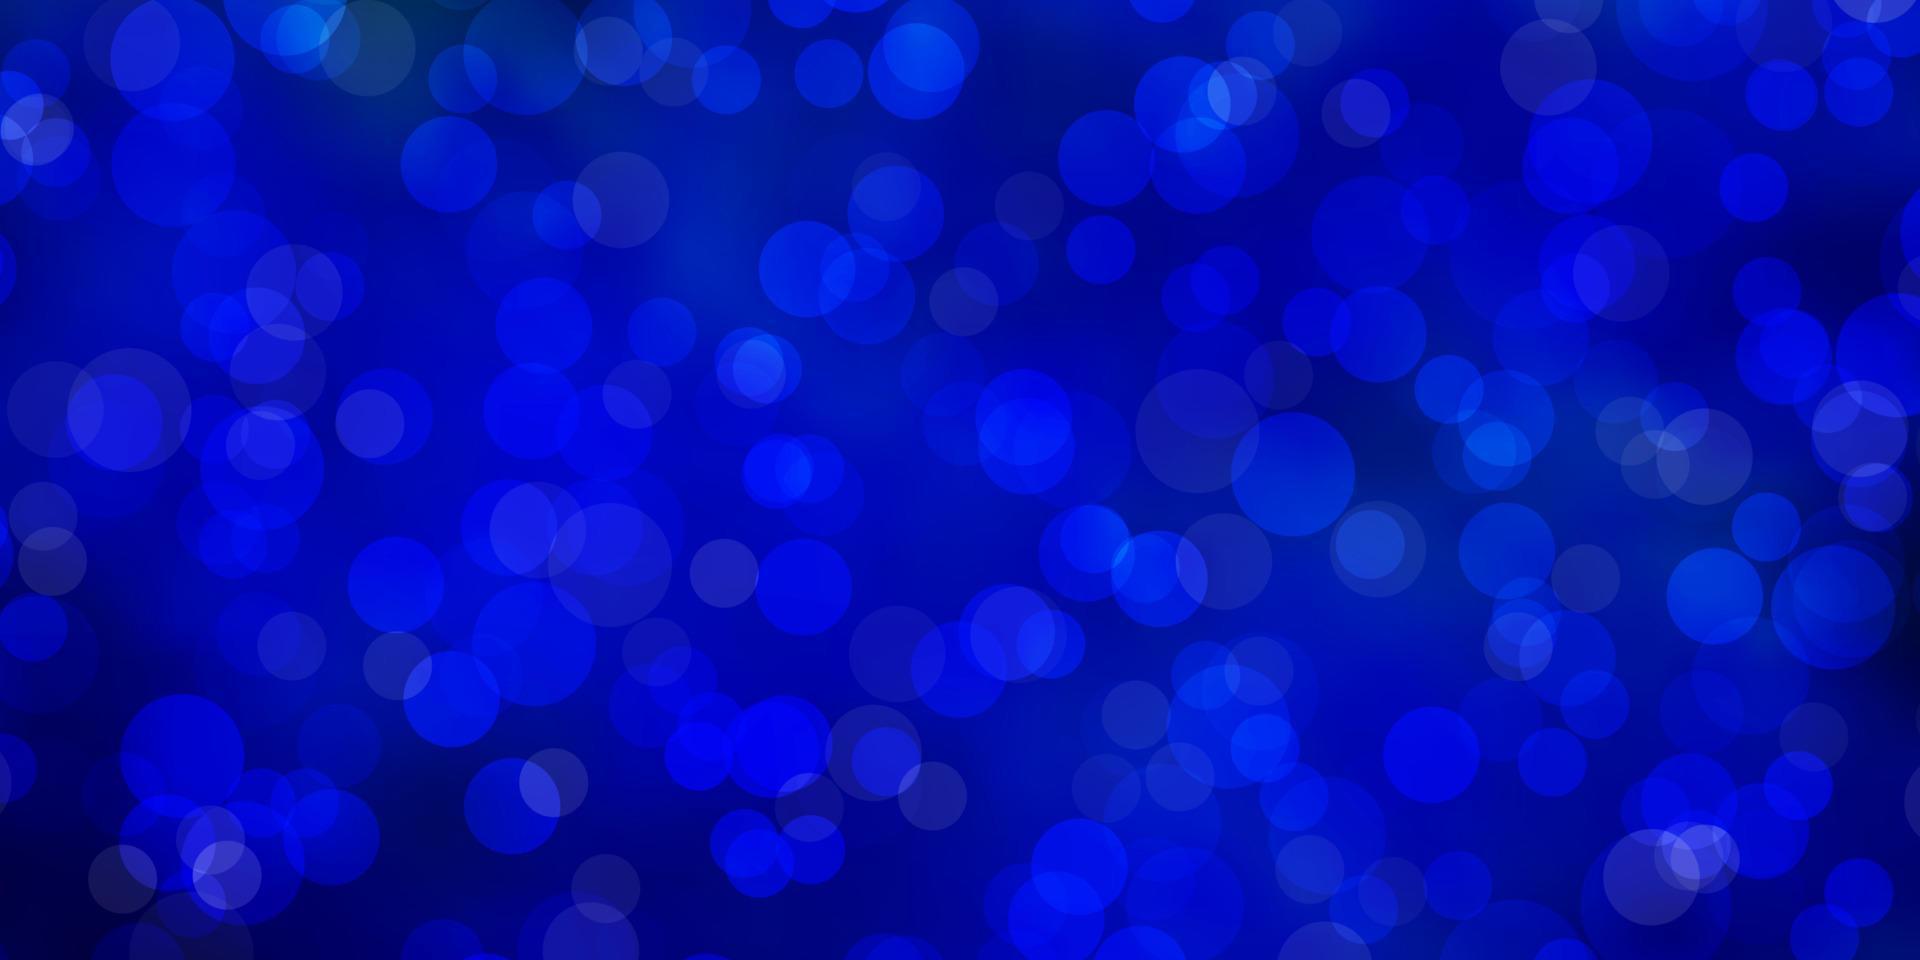 sfondo vettoriale azzurro con macchie.